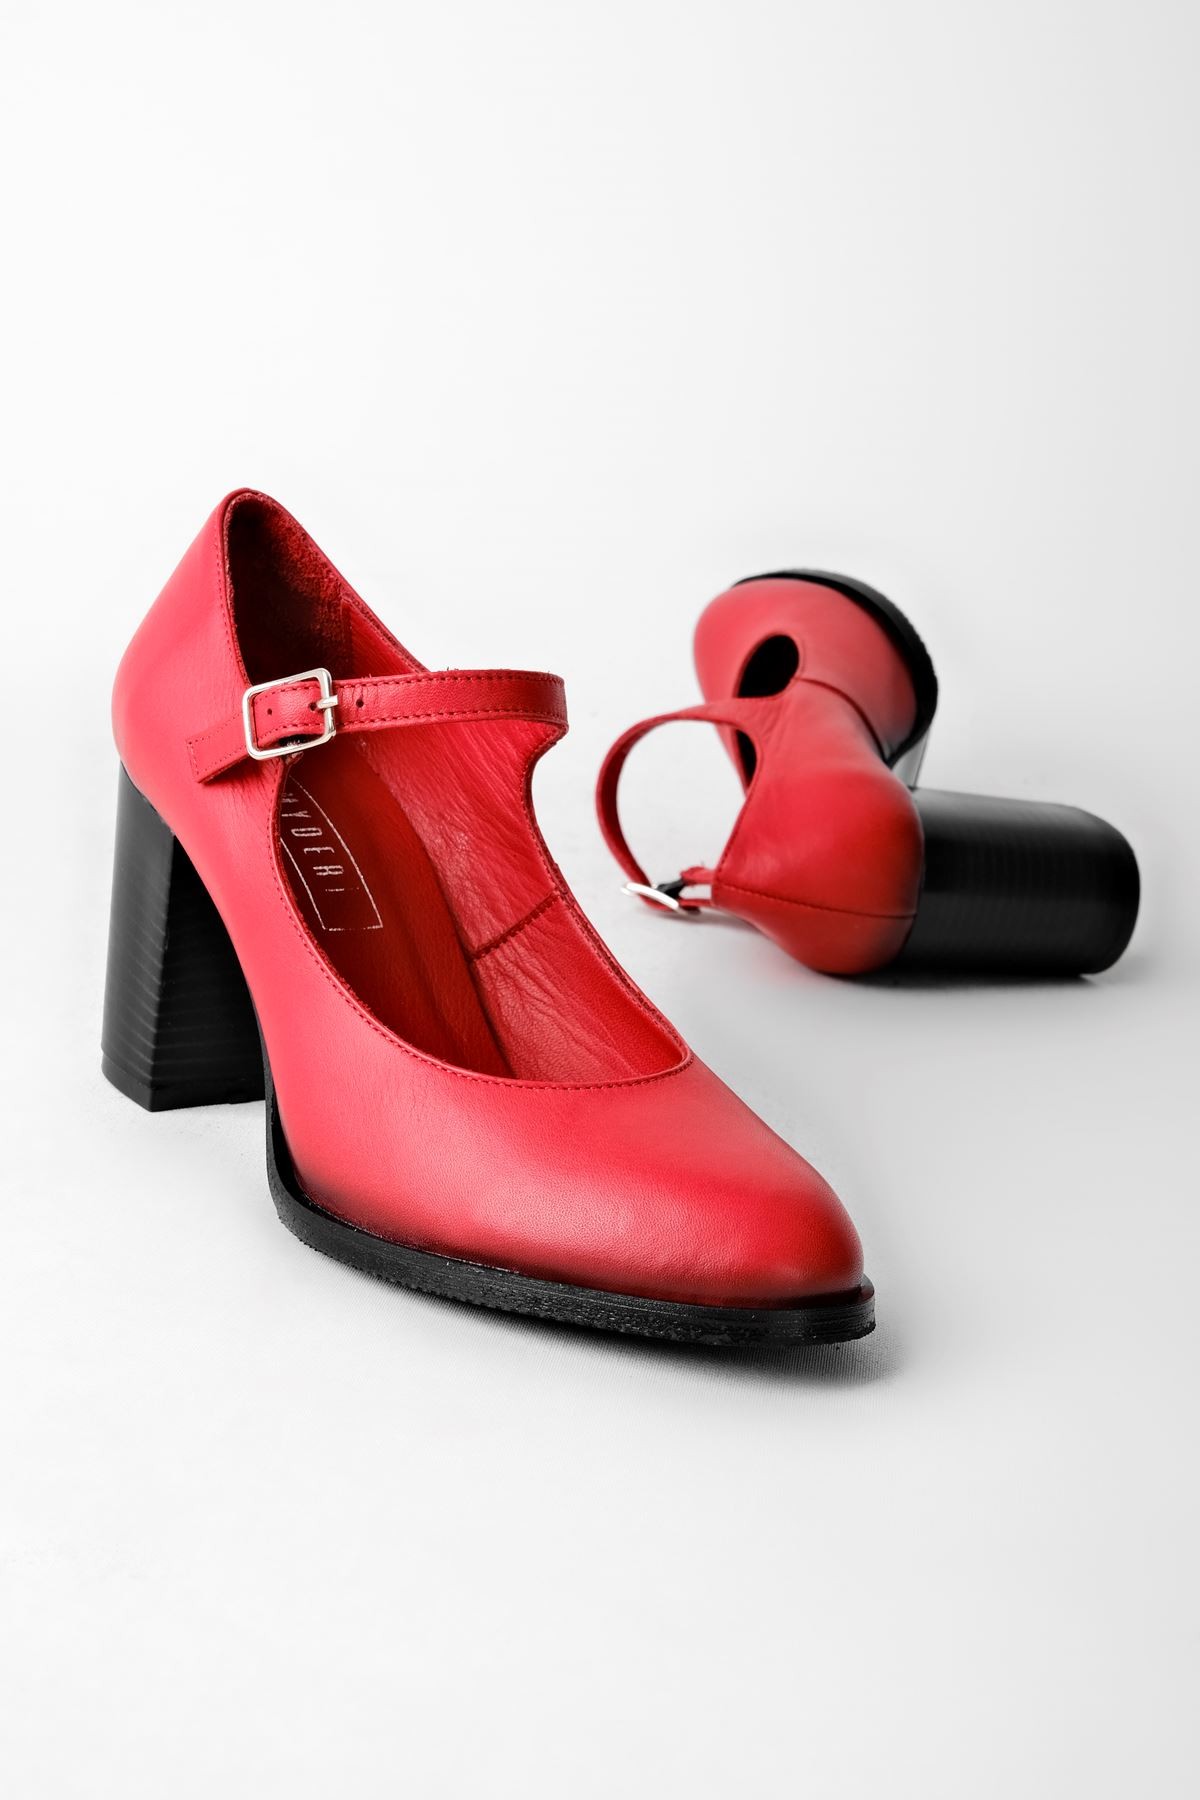 Sharoy Balerin Kadın Hakiki Deri Topuklu Ayakkabı- B2775 - Kırmızı